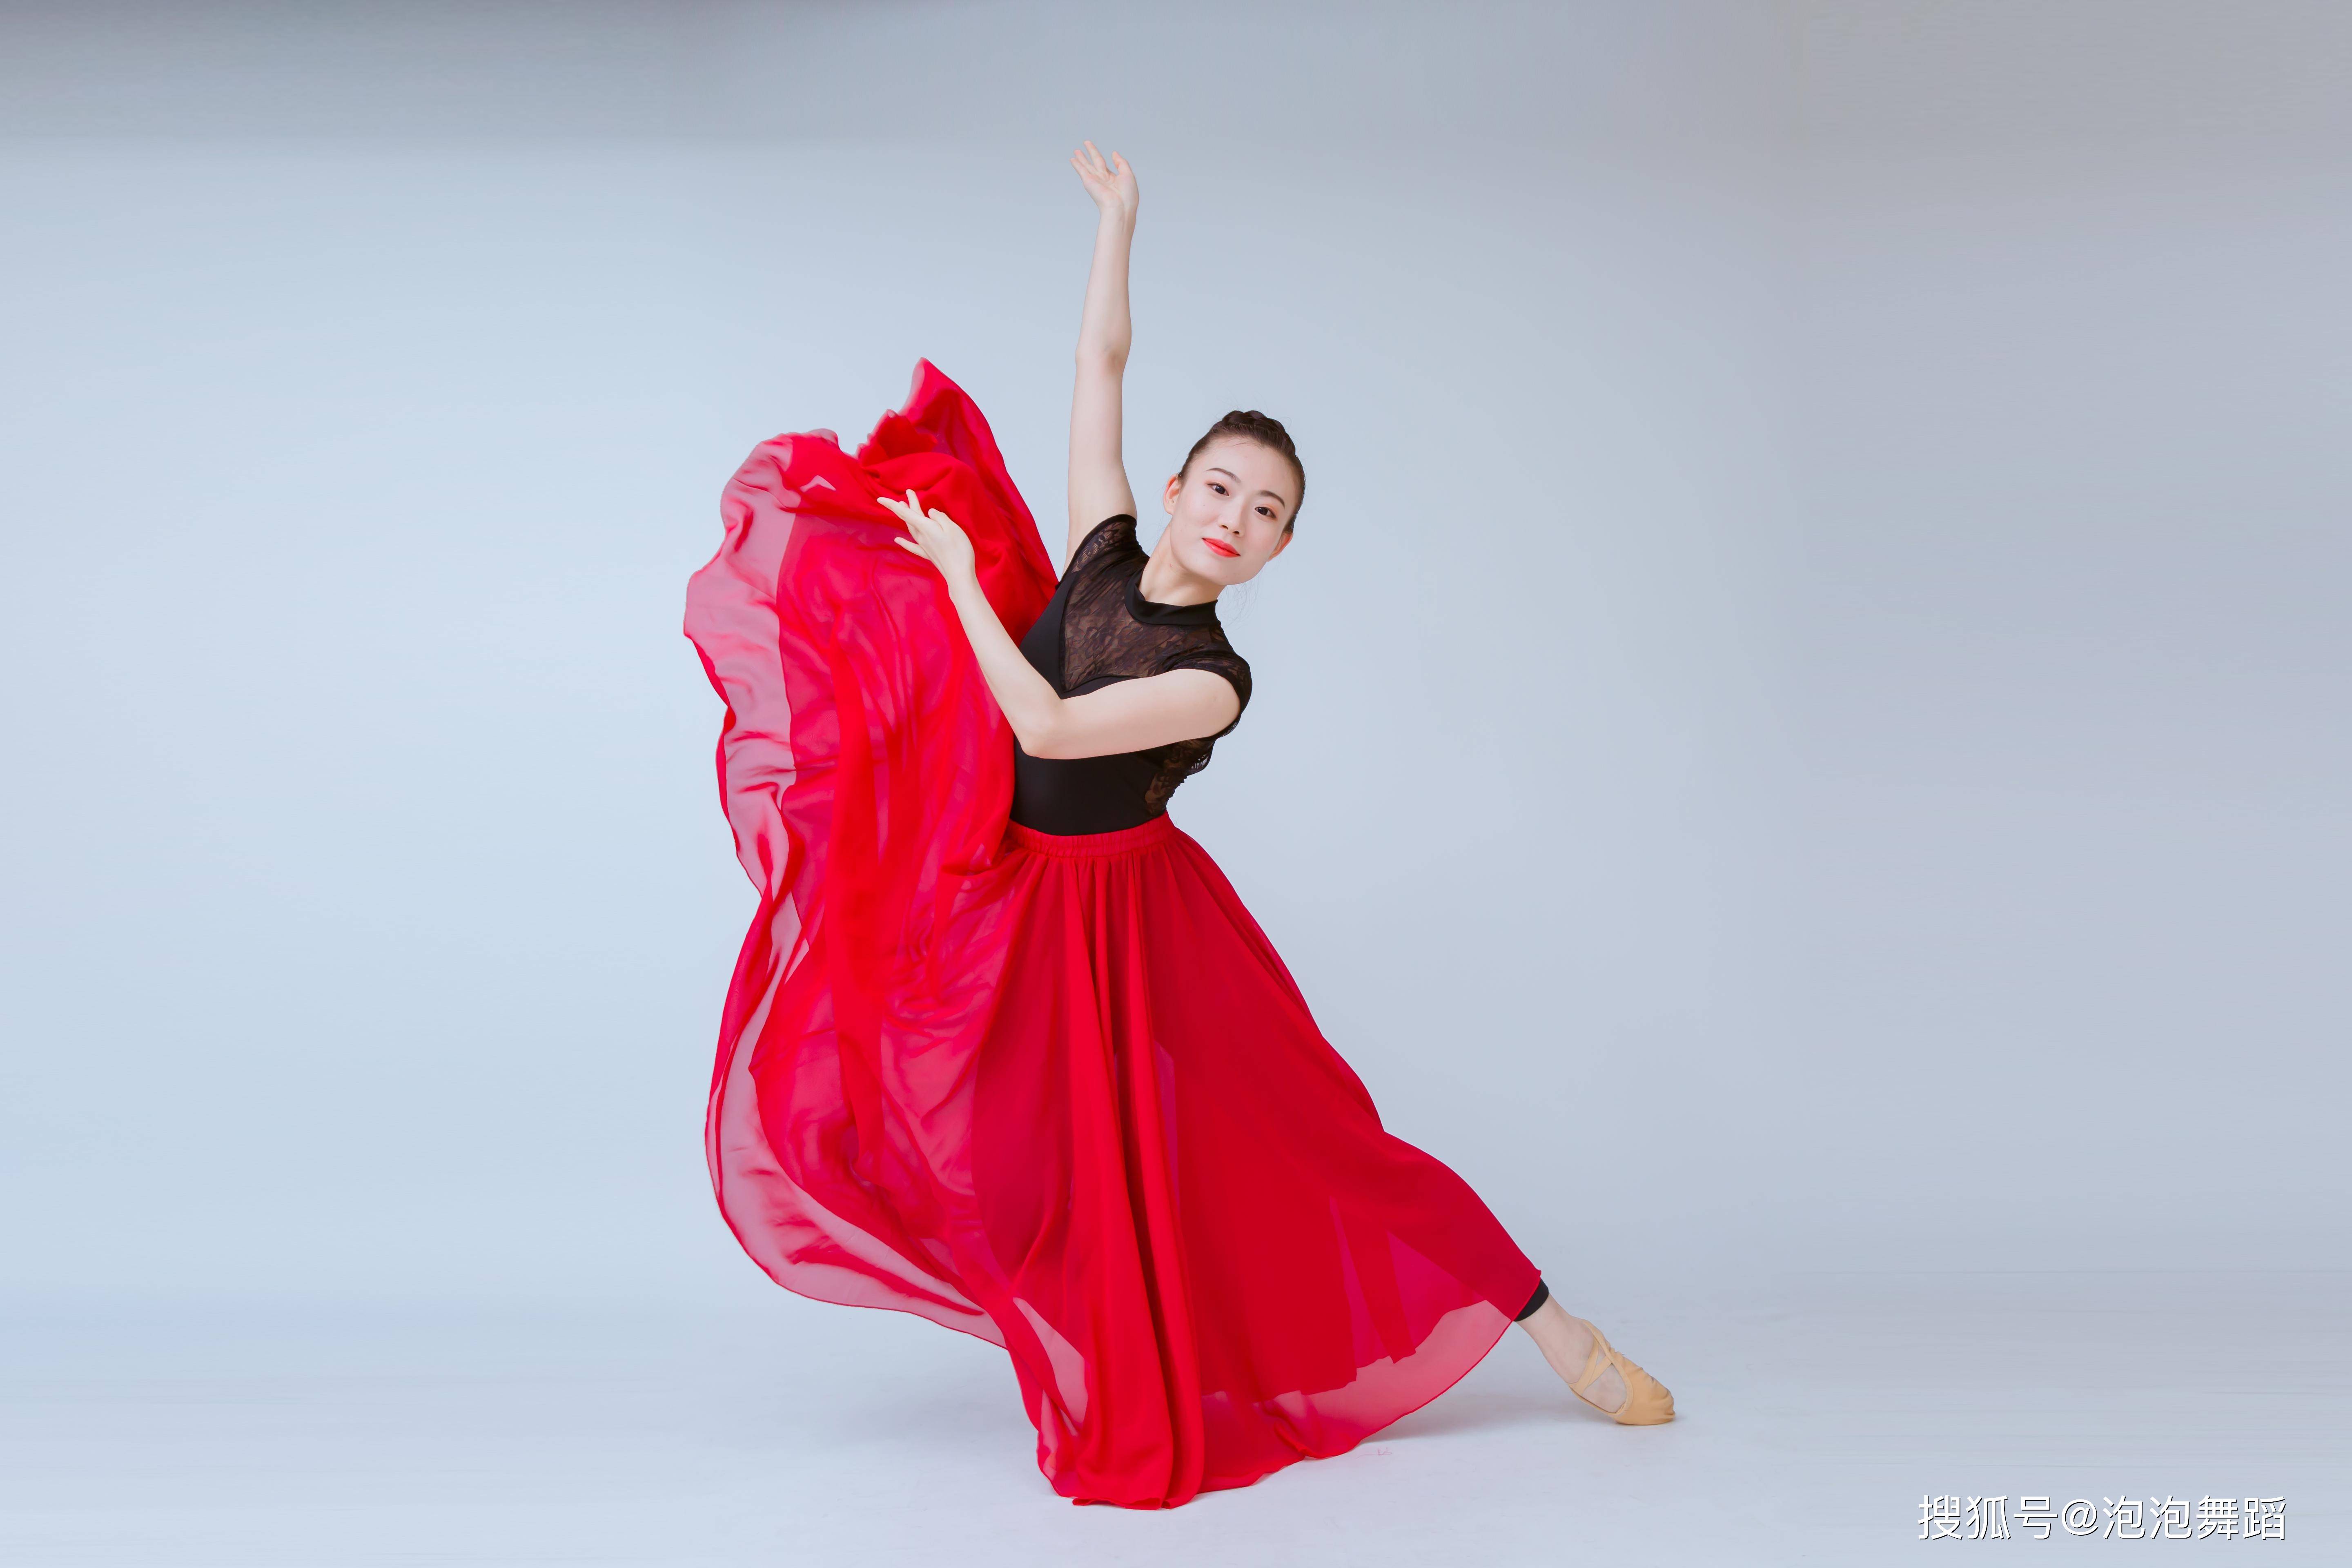 以情带舞,以舞传情——中国舞的魅力